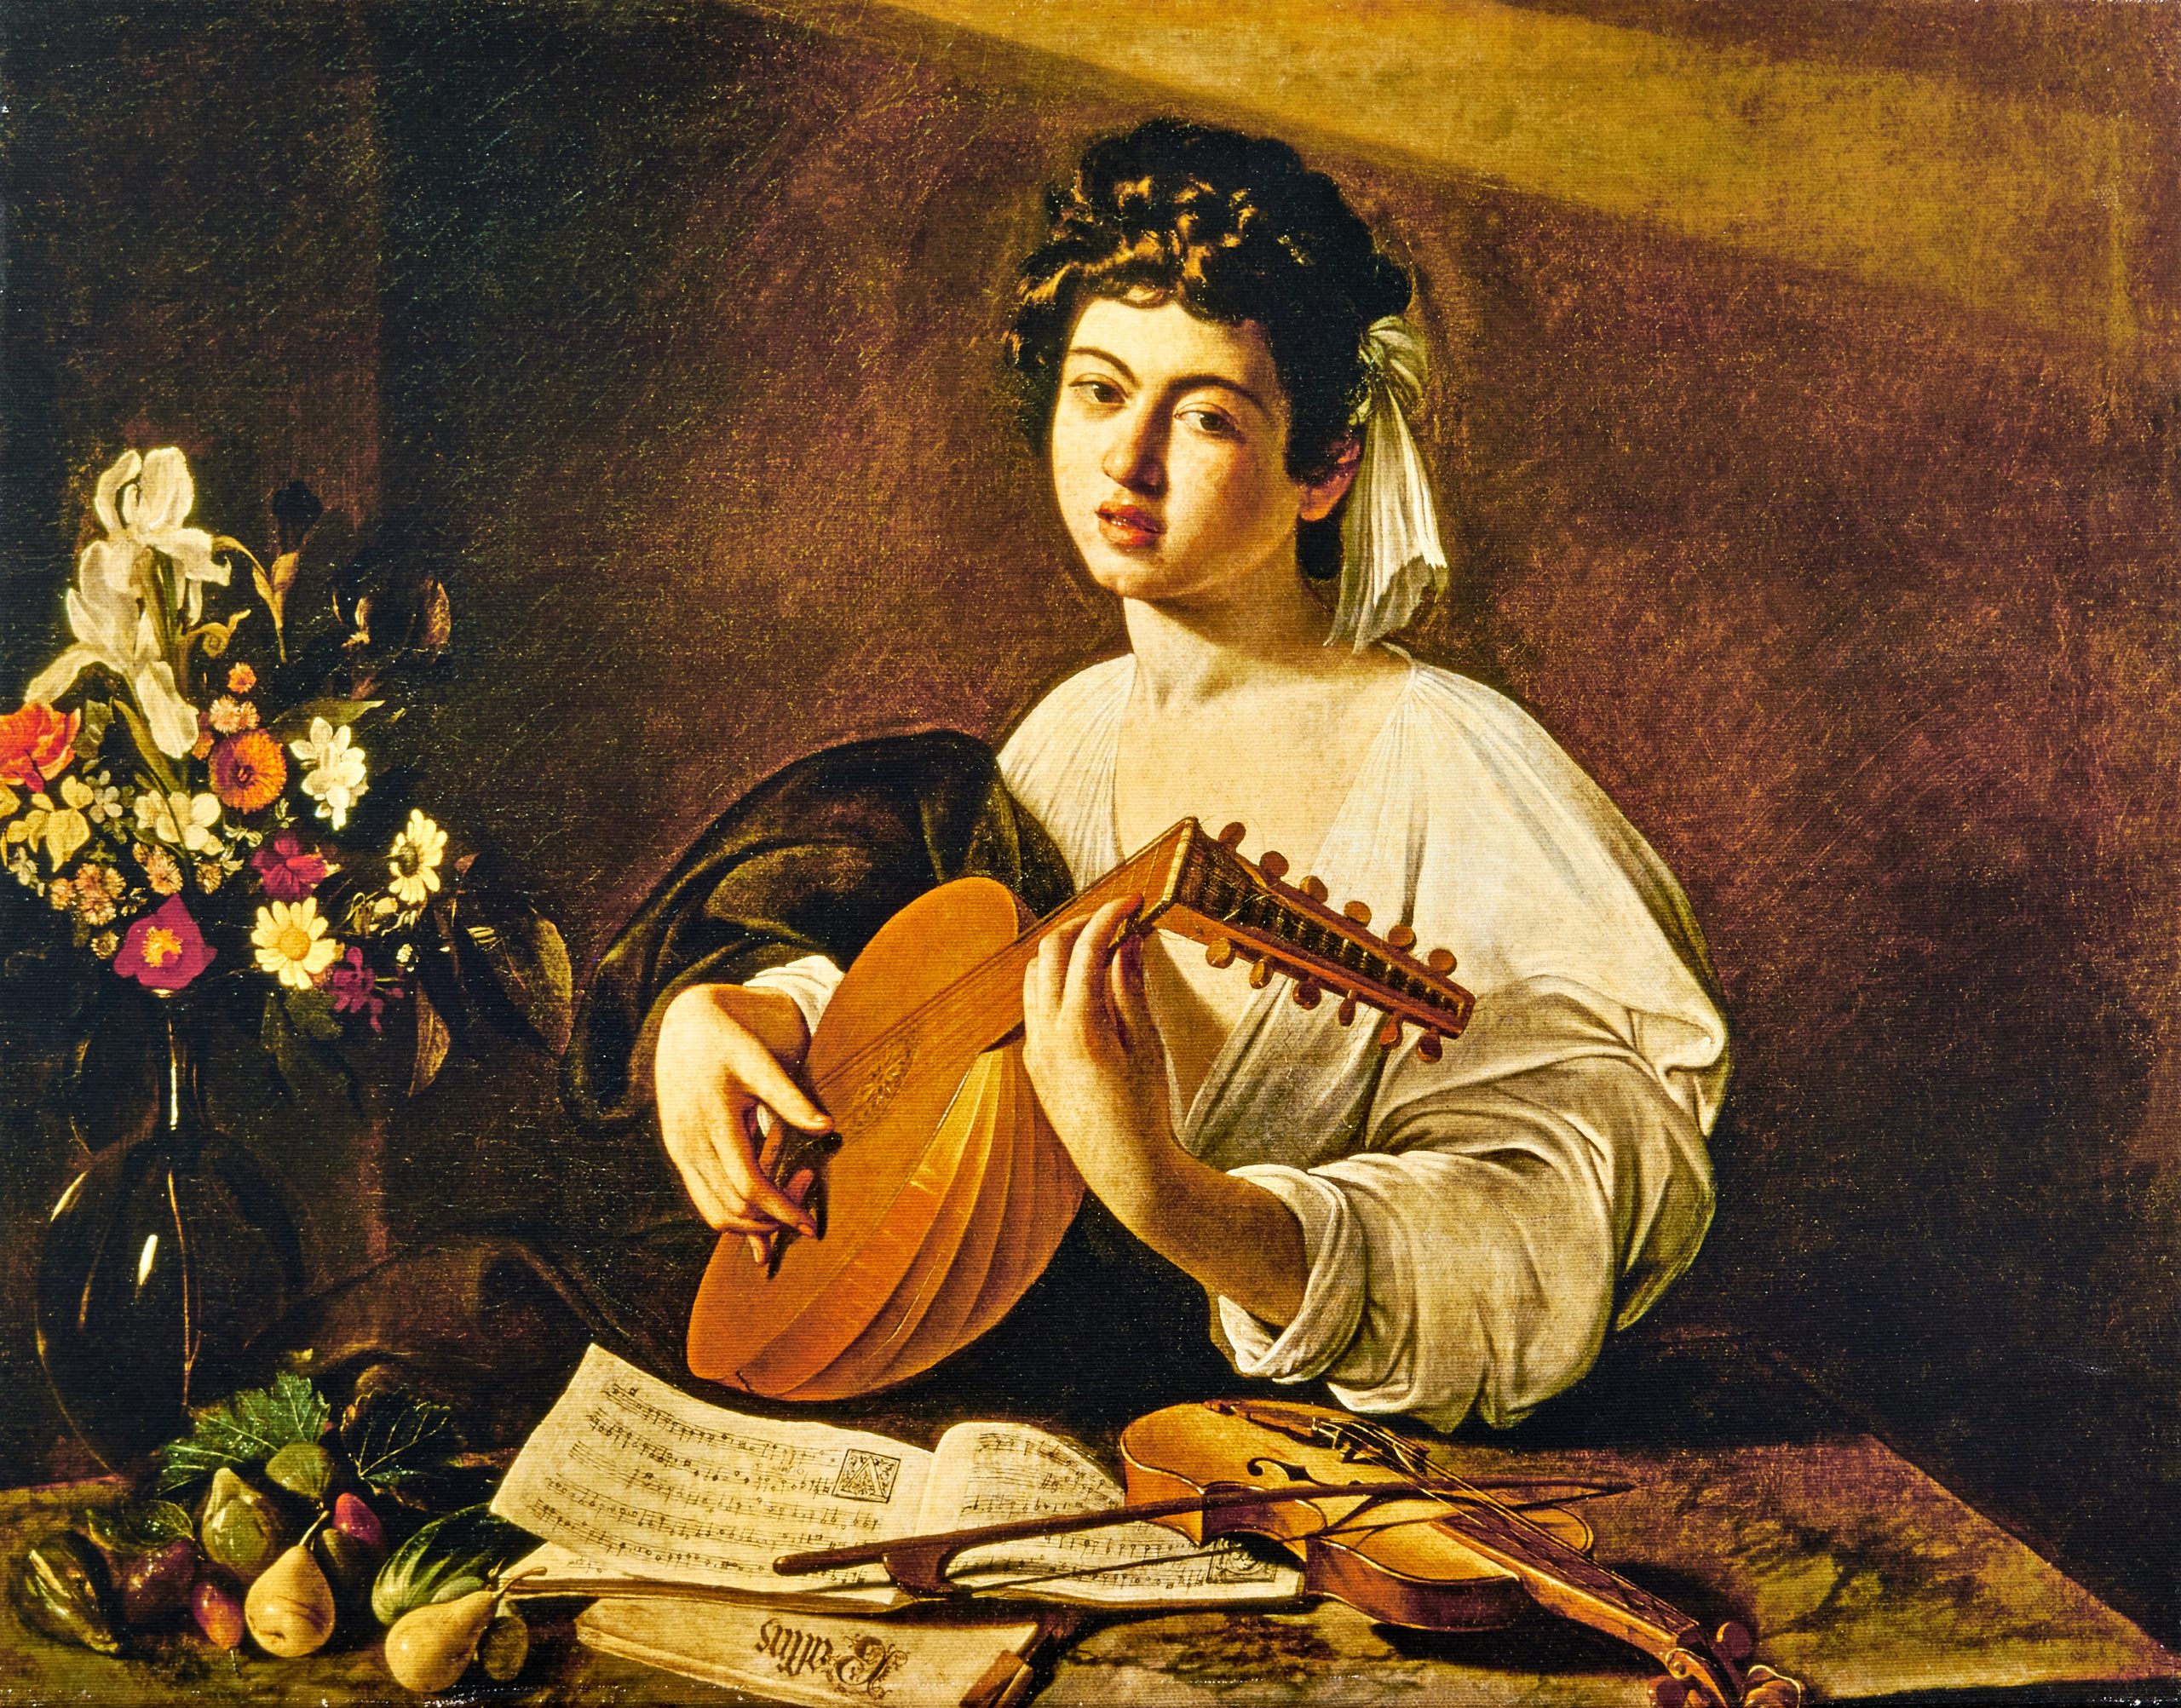 Caravaggio, Michelangelo Der Lautenspieler